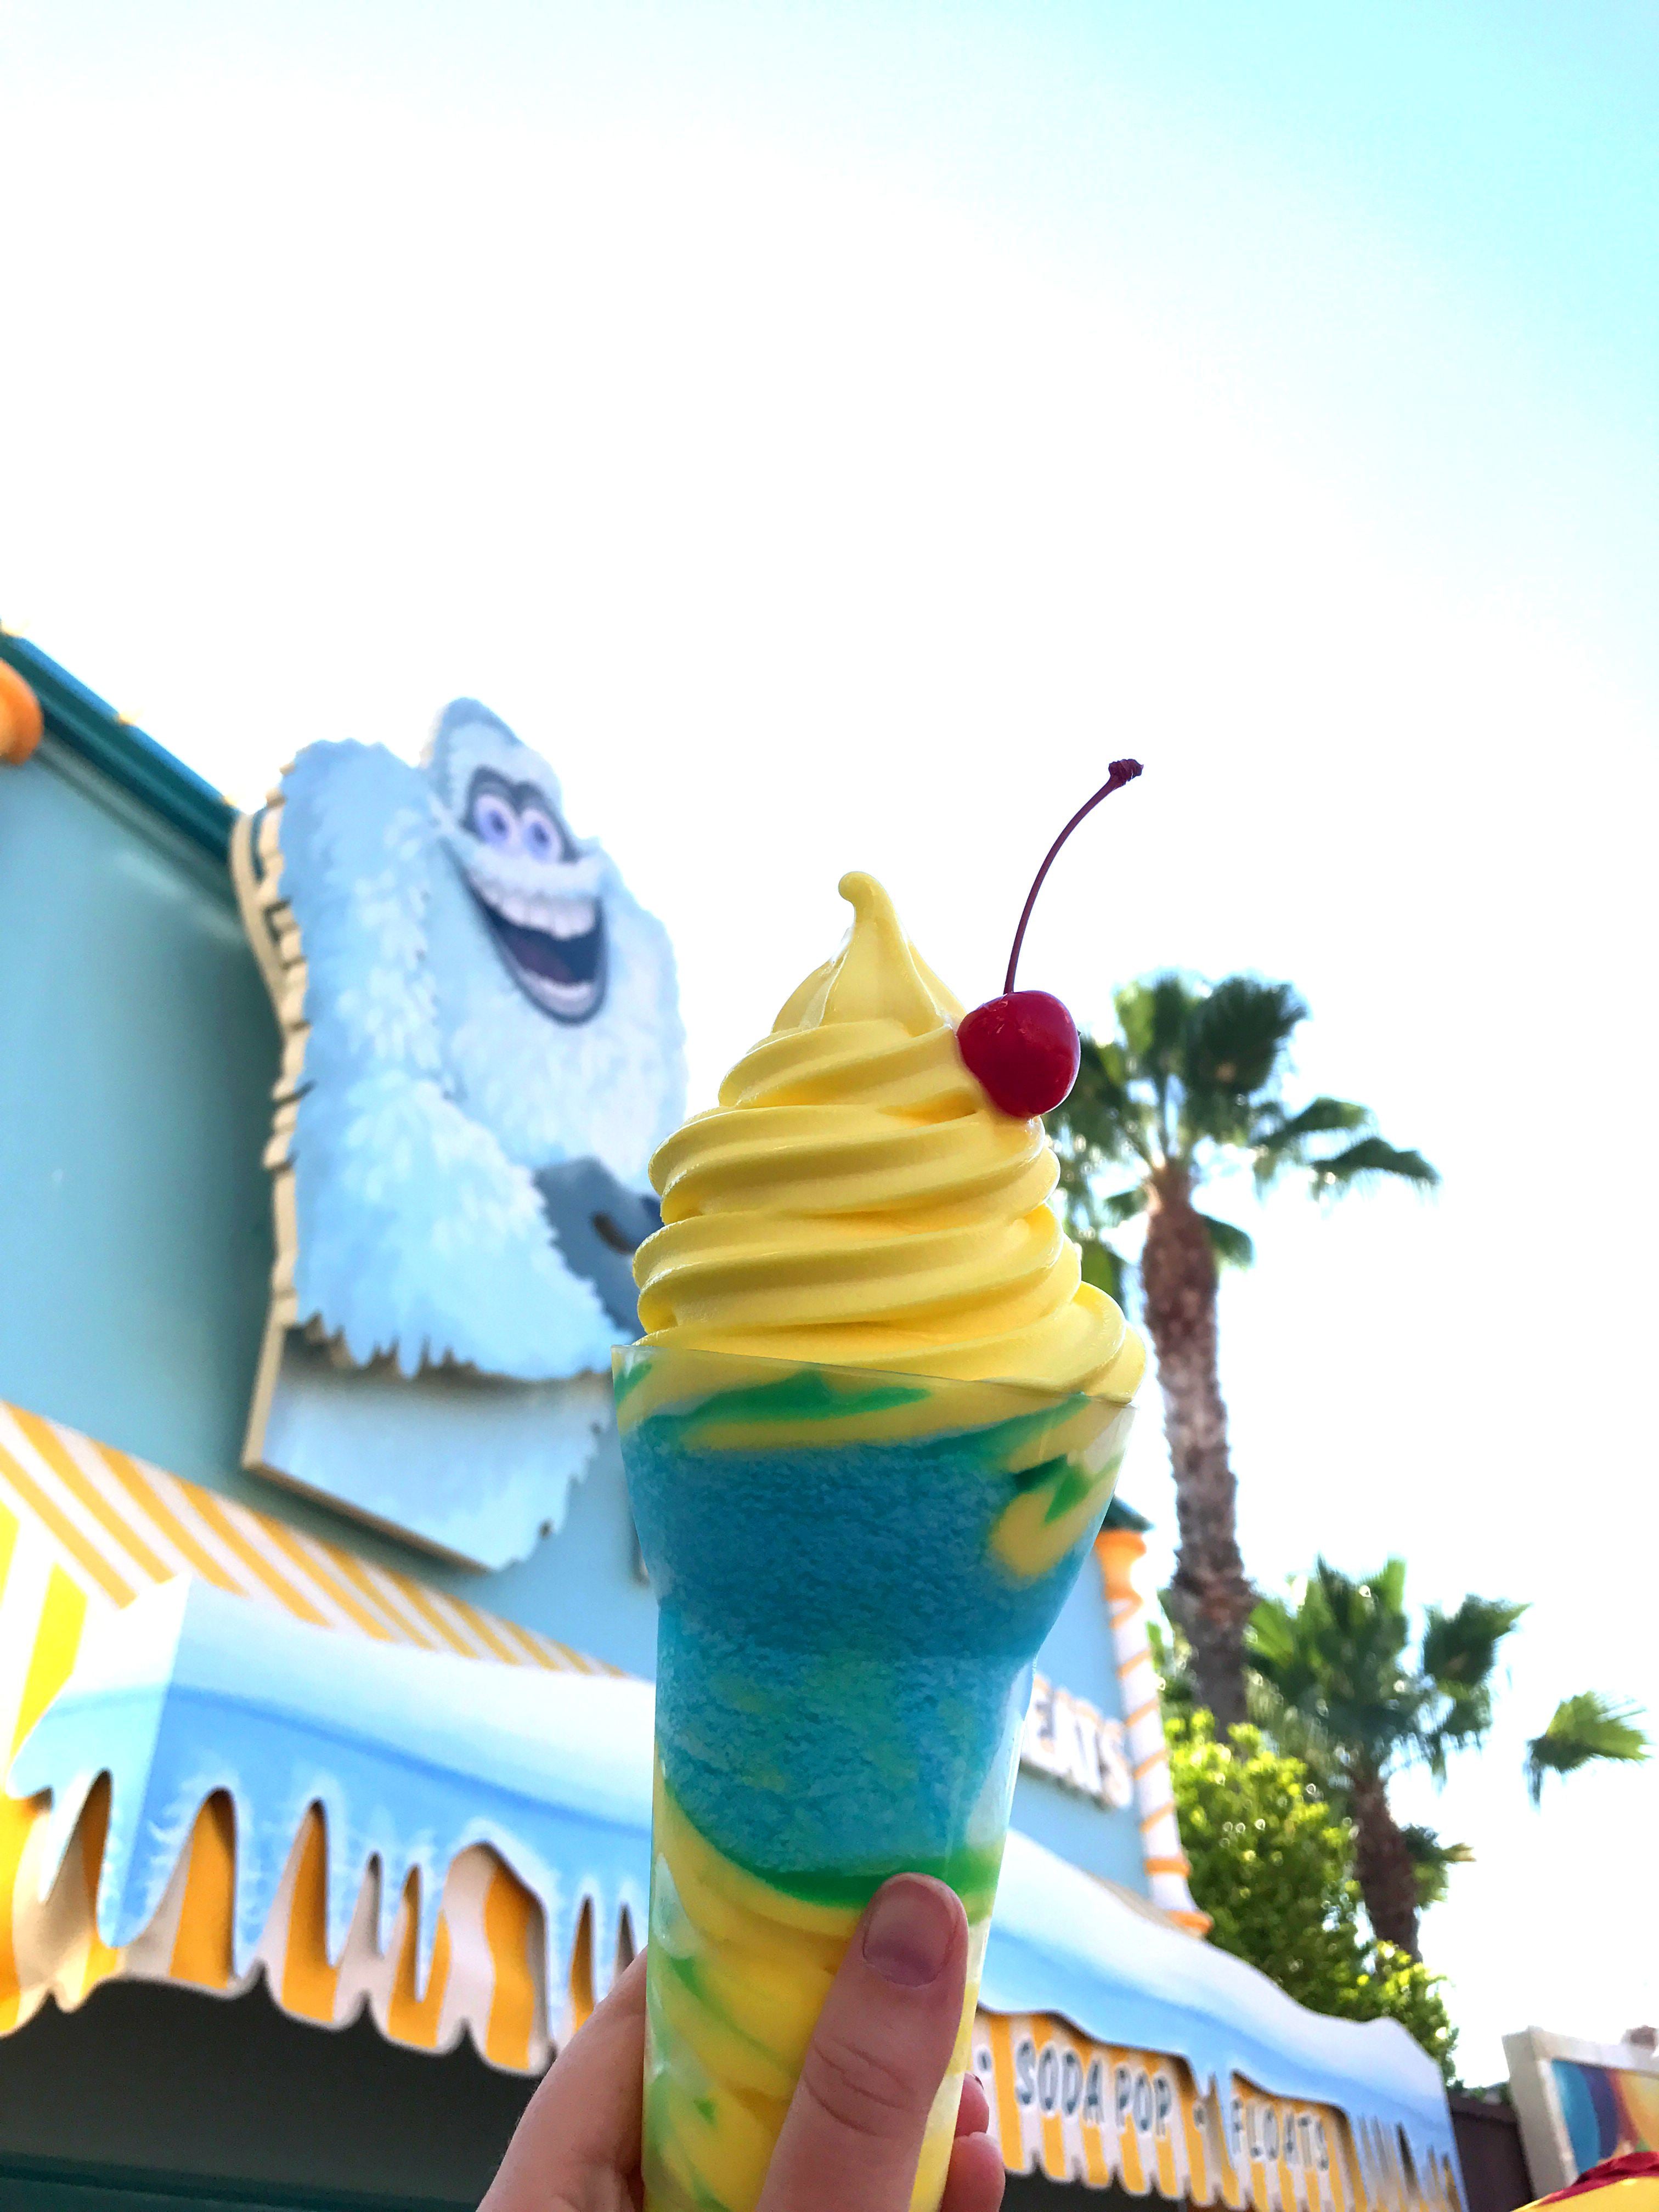 Adorable Snowman Frozen Treats ice cream stand opens for Pixar Pier at  Disneyland Resort 